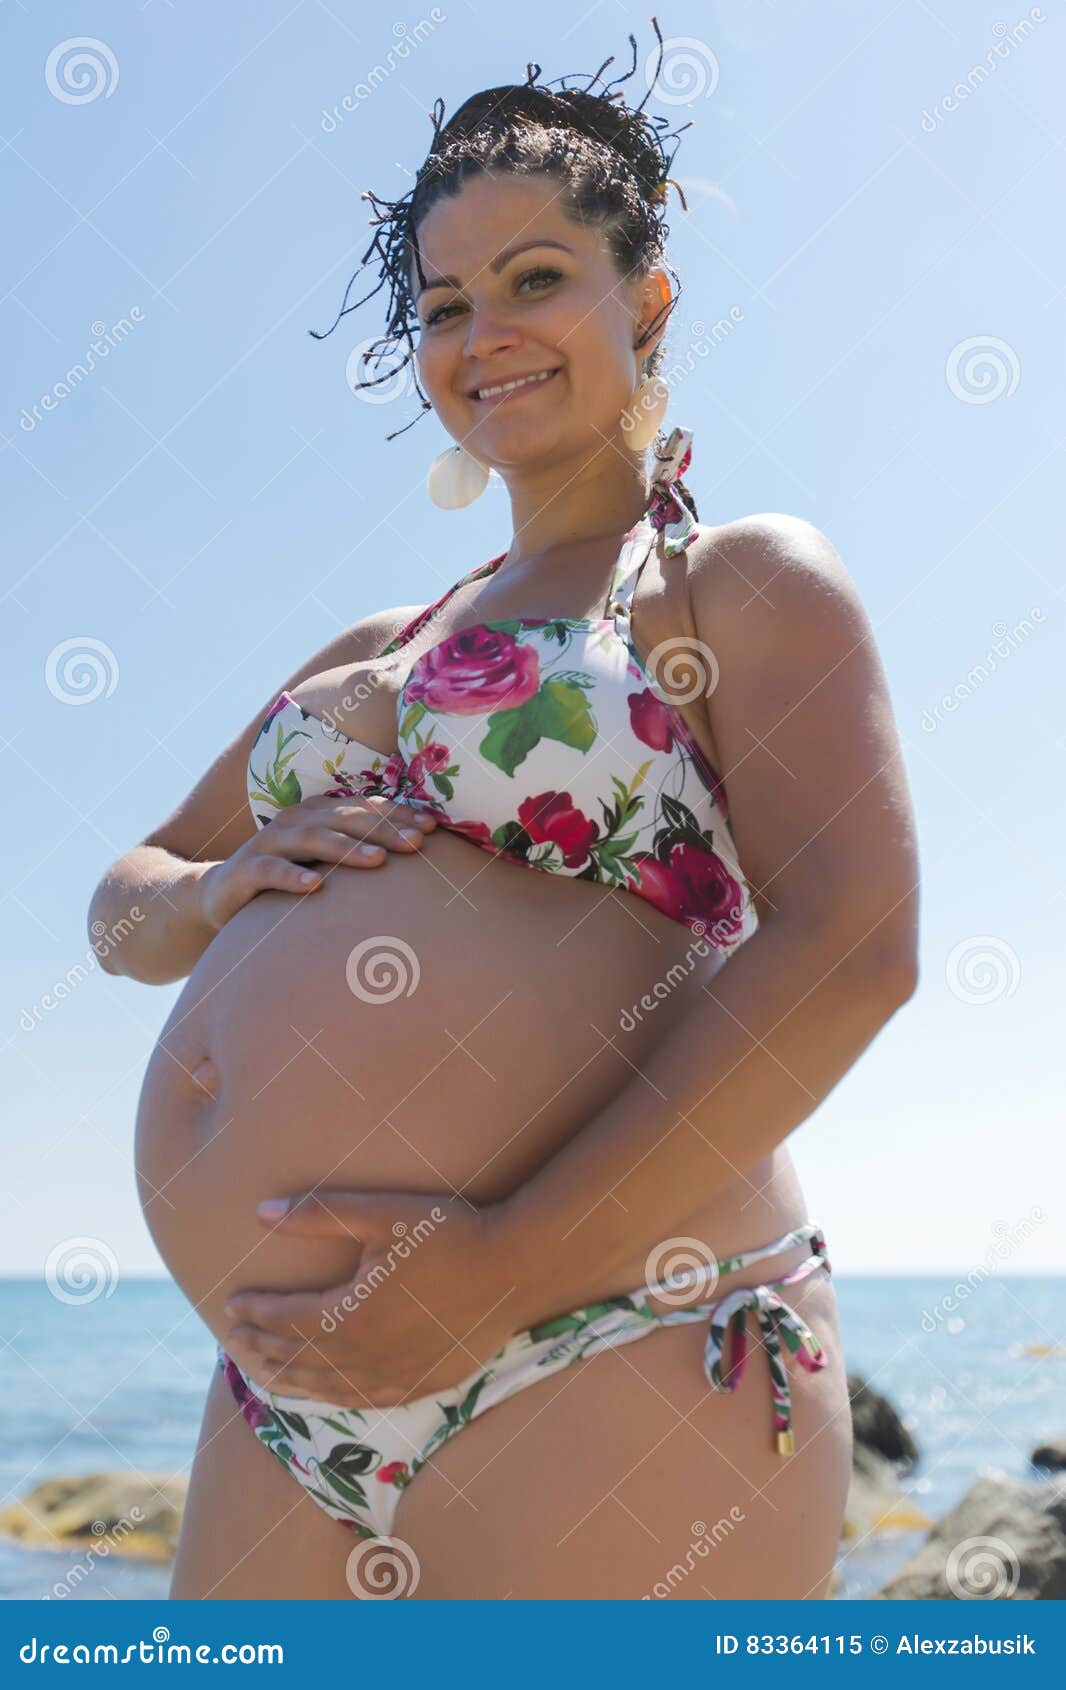 La Mujer Embarazada Atractiva En De Baño Para La Panza Imagen de archivo - Imagen de lifestyle, horizonte: 83364115